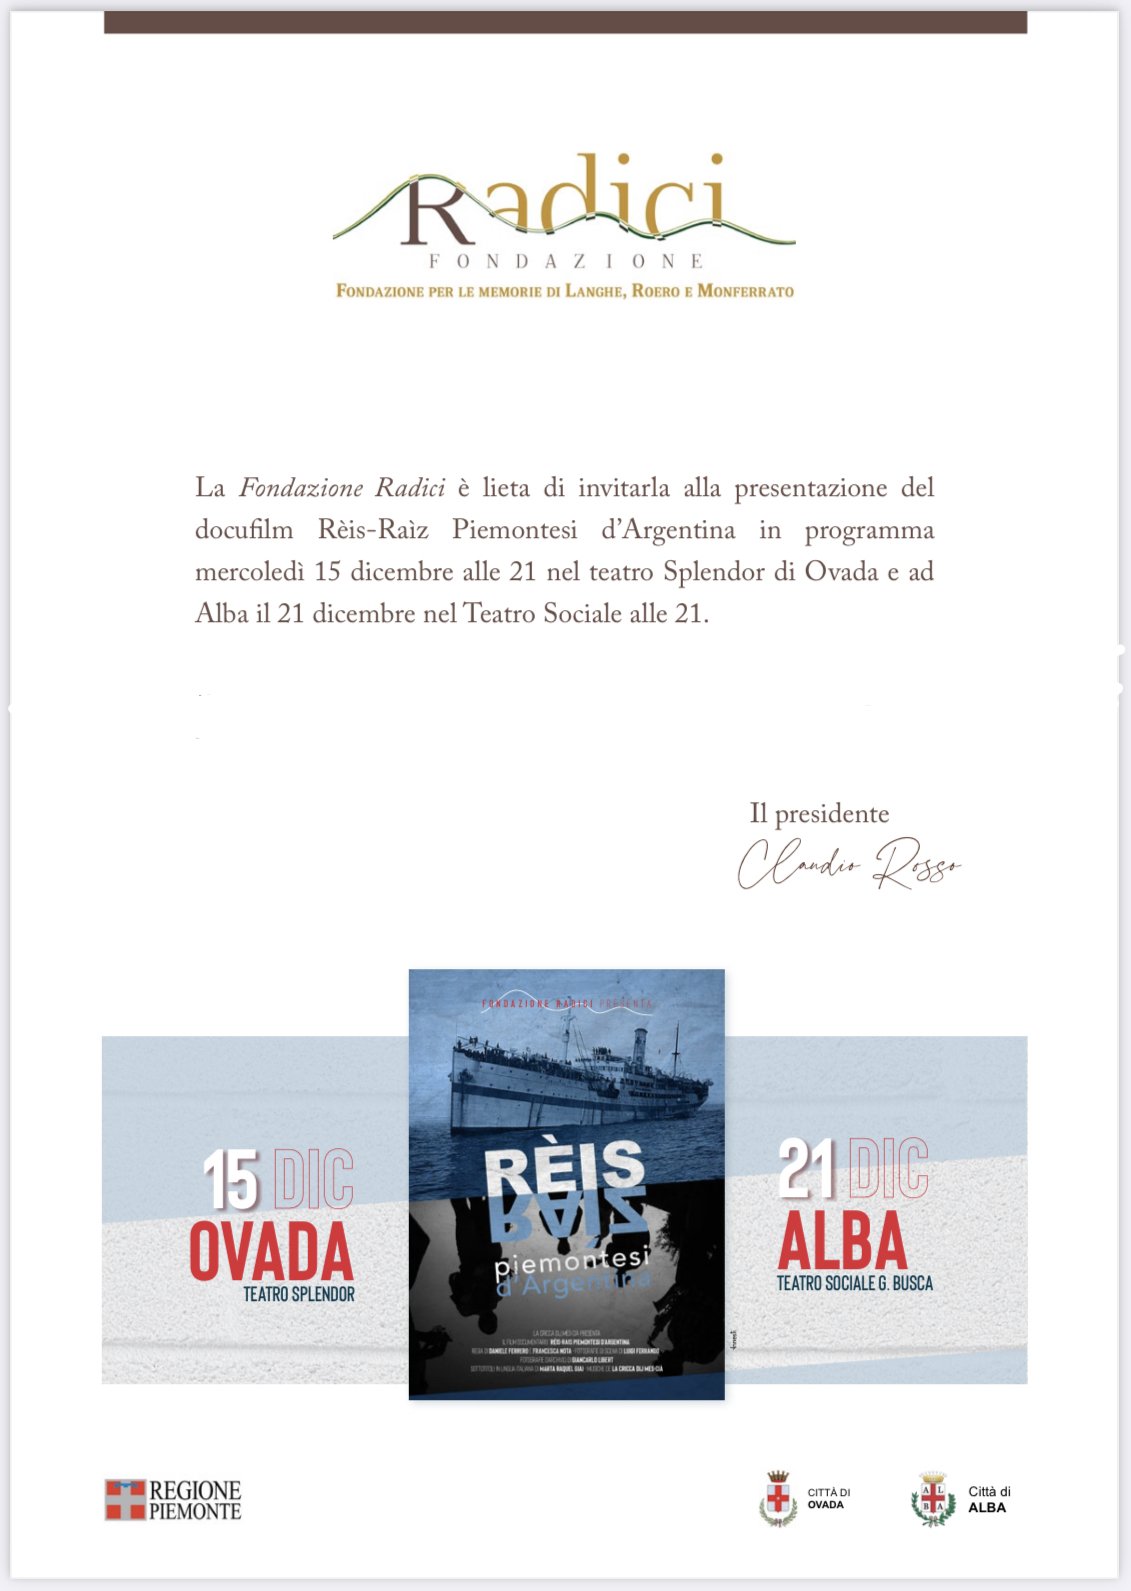 Il 15 dicembre a Ovada la presentazione del docufilm “Rèis-Raìz Piemontesi d’Argentina”